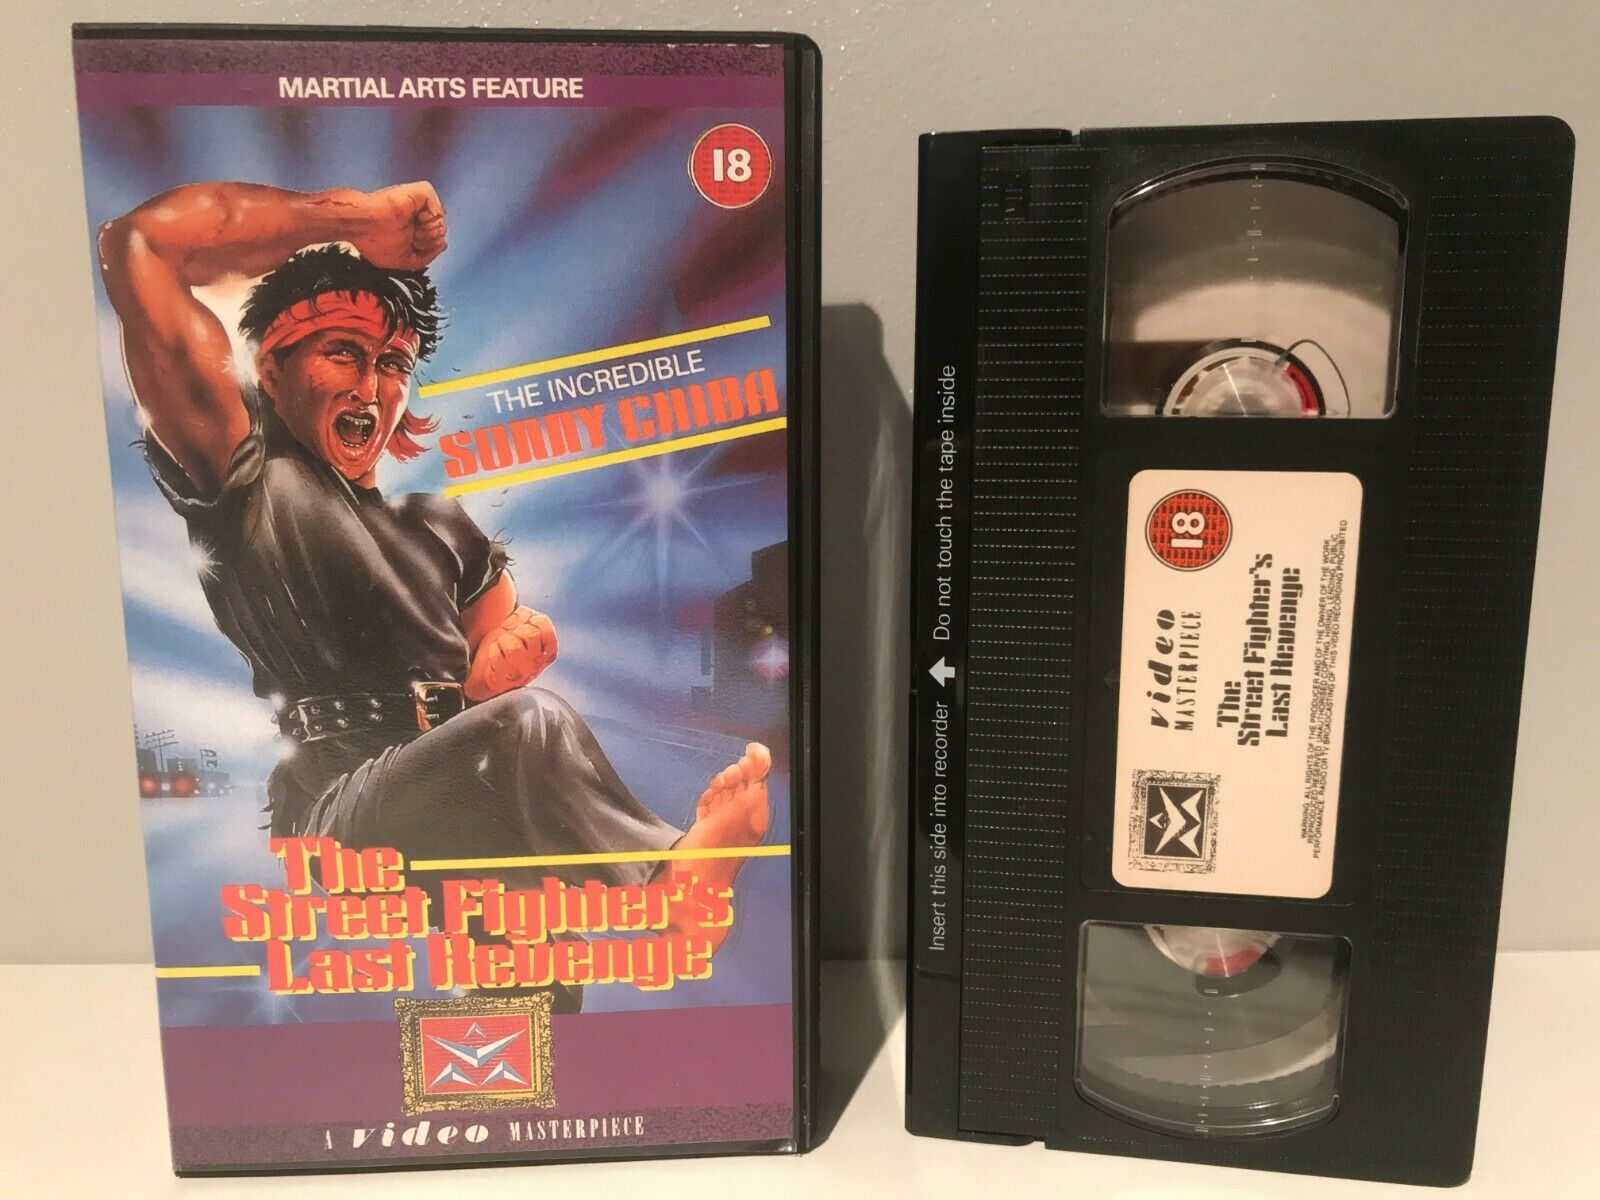 The Street Fighter's Last Revenge (1974): Japanese Action - Exploitation - VHS-